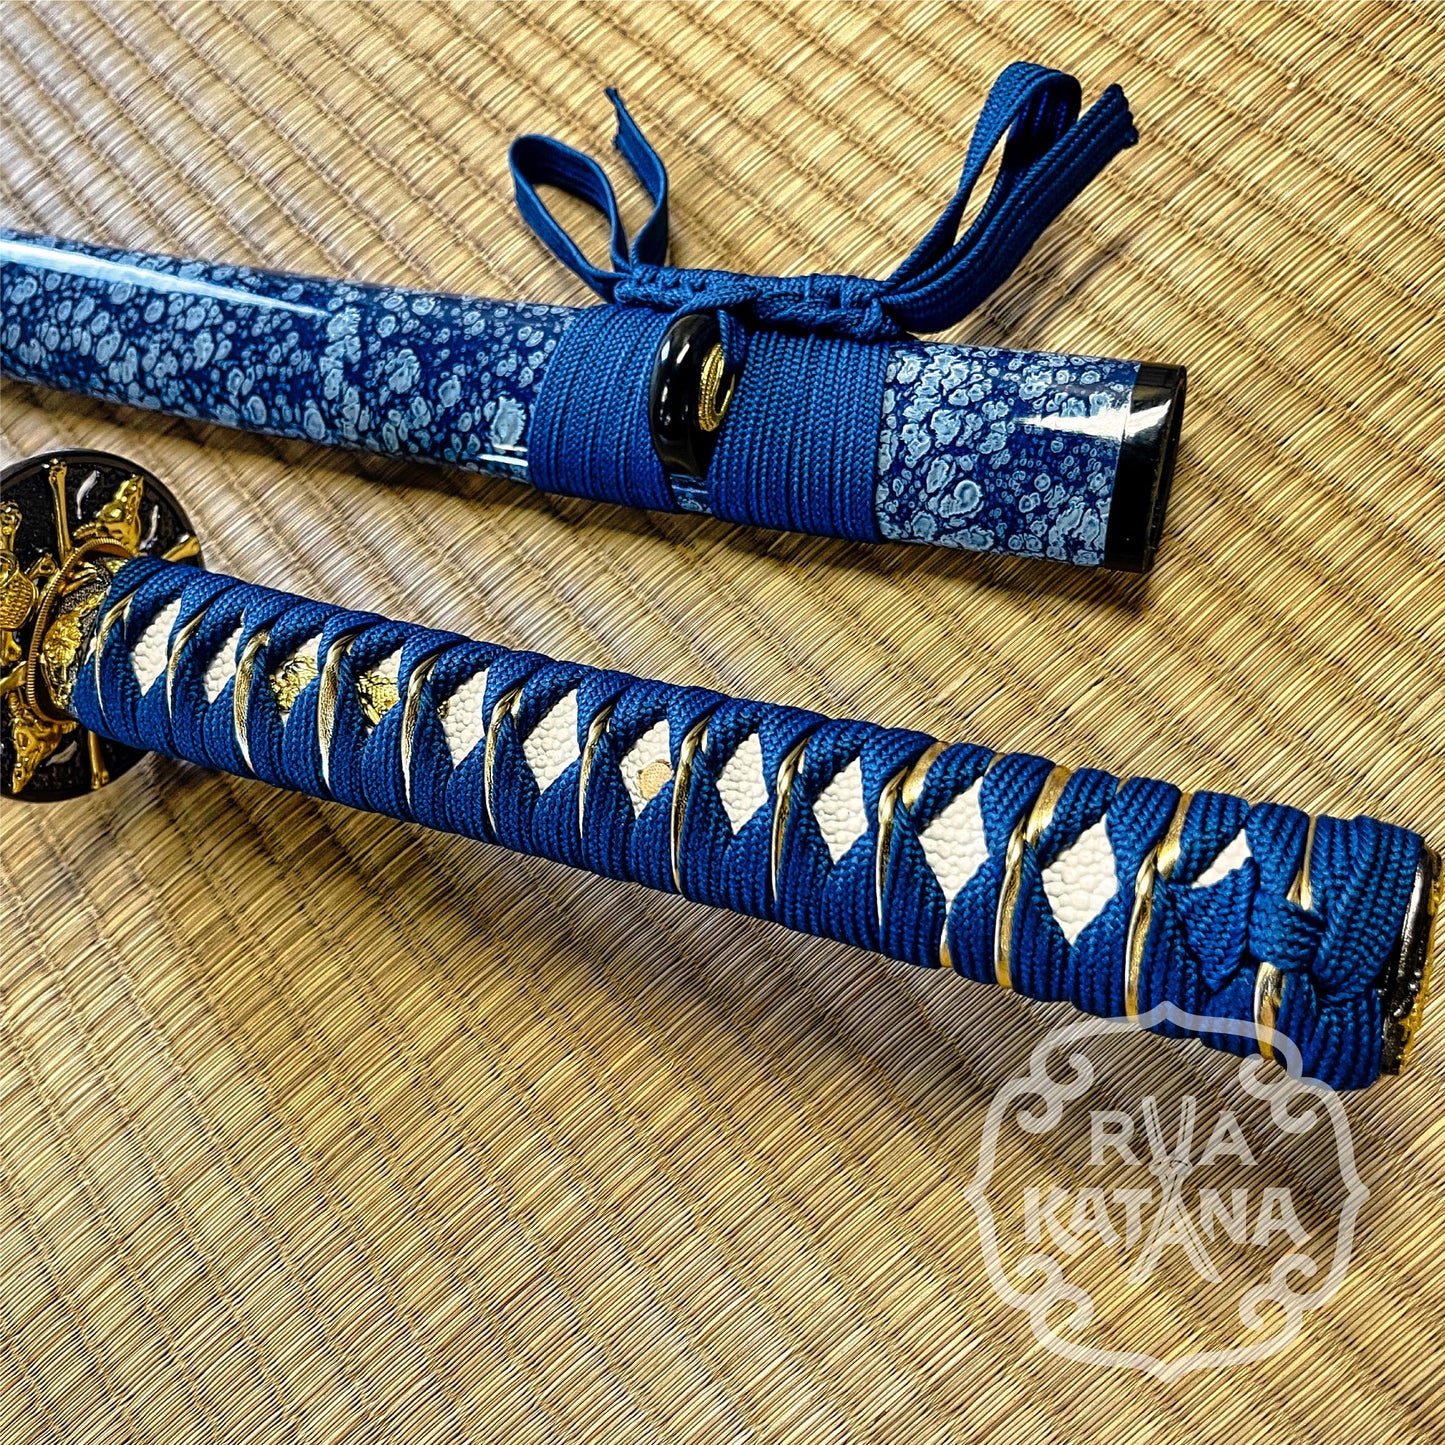 Katana, 1060 Steel, Blue Blade, Skull Theme